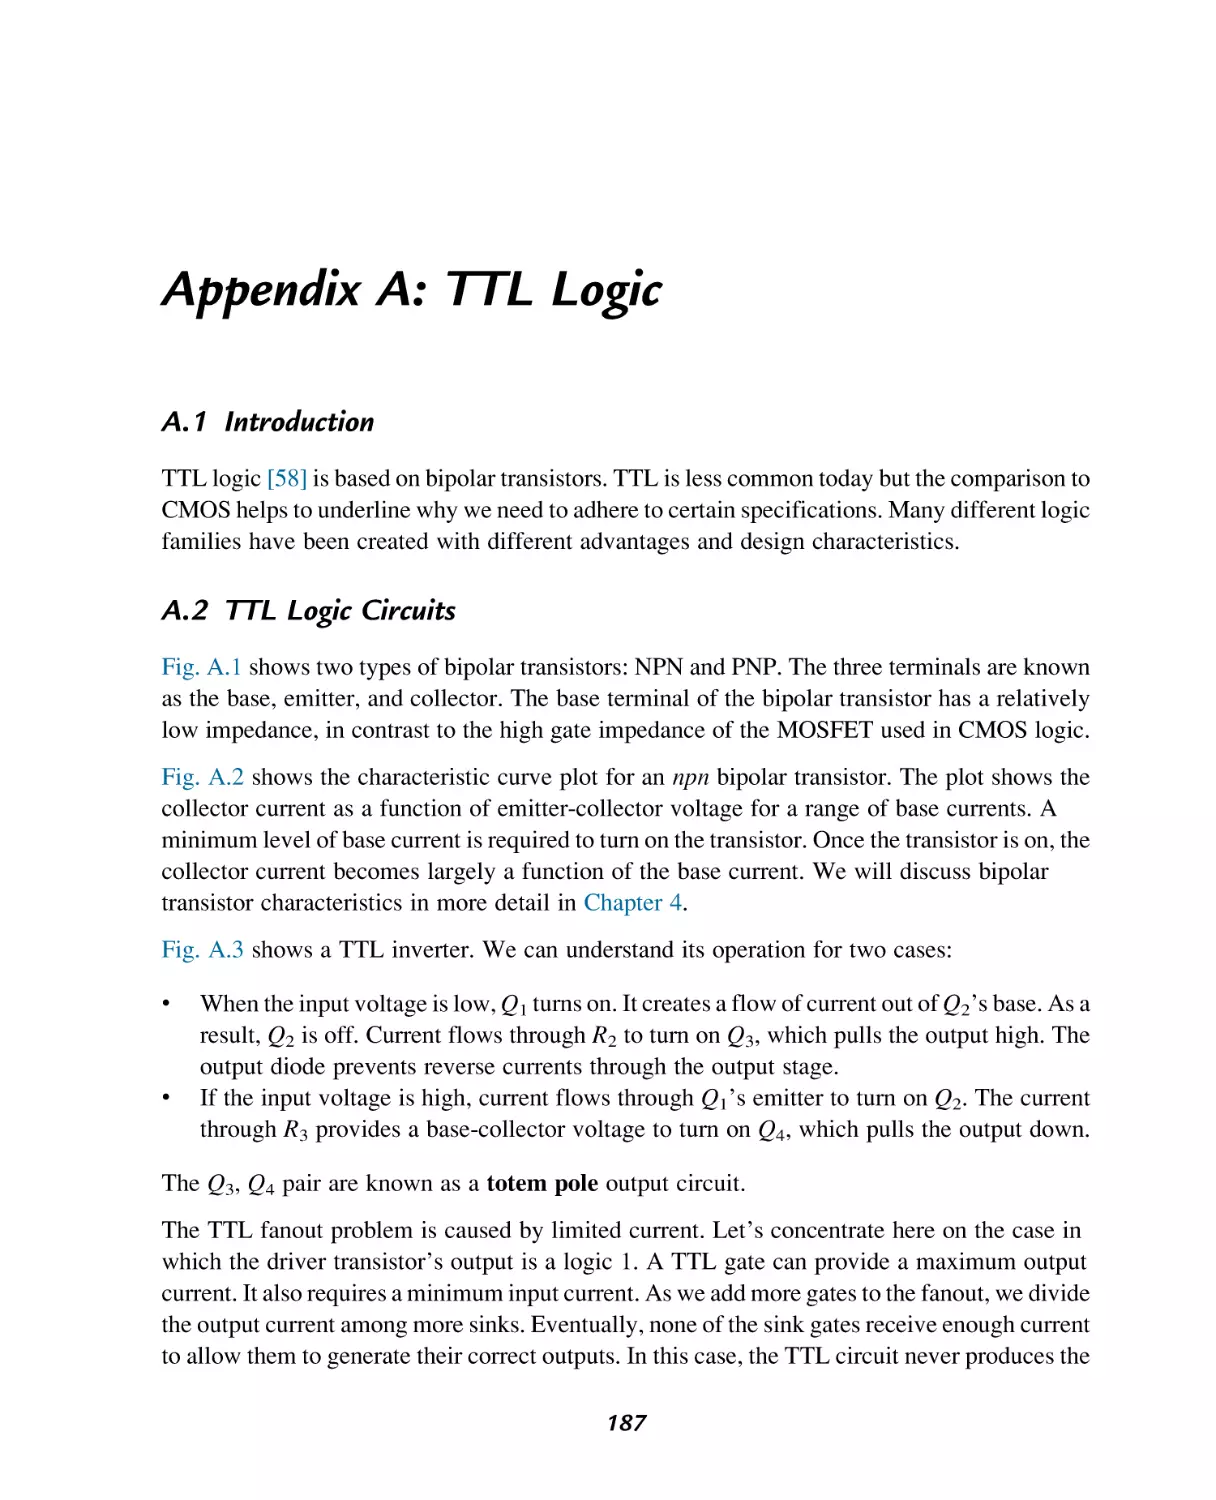 Appendix A
Introduction
TTL Logic Circuits